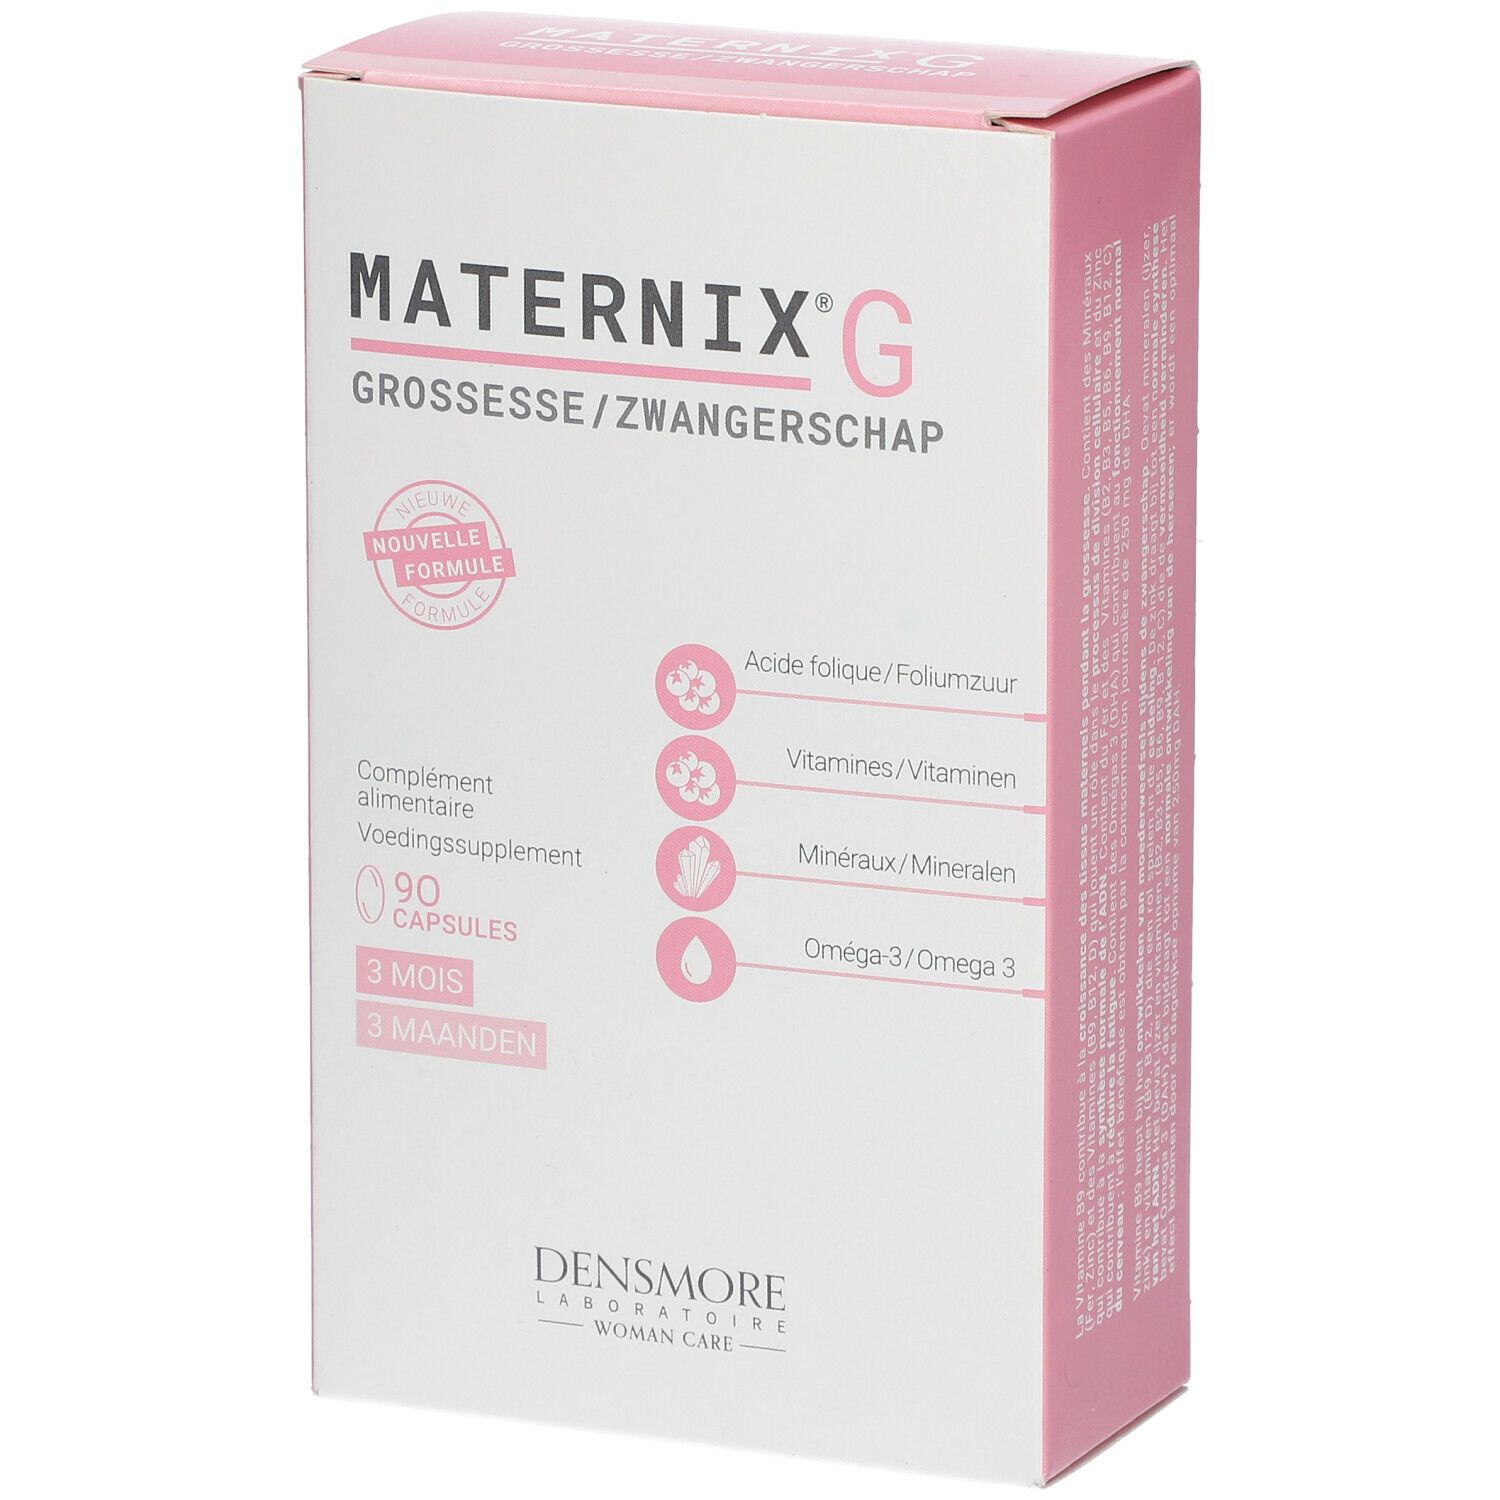 Grossesse Iron Maternix G 30/90 Densmore capsules